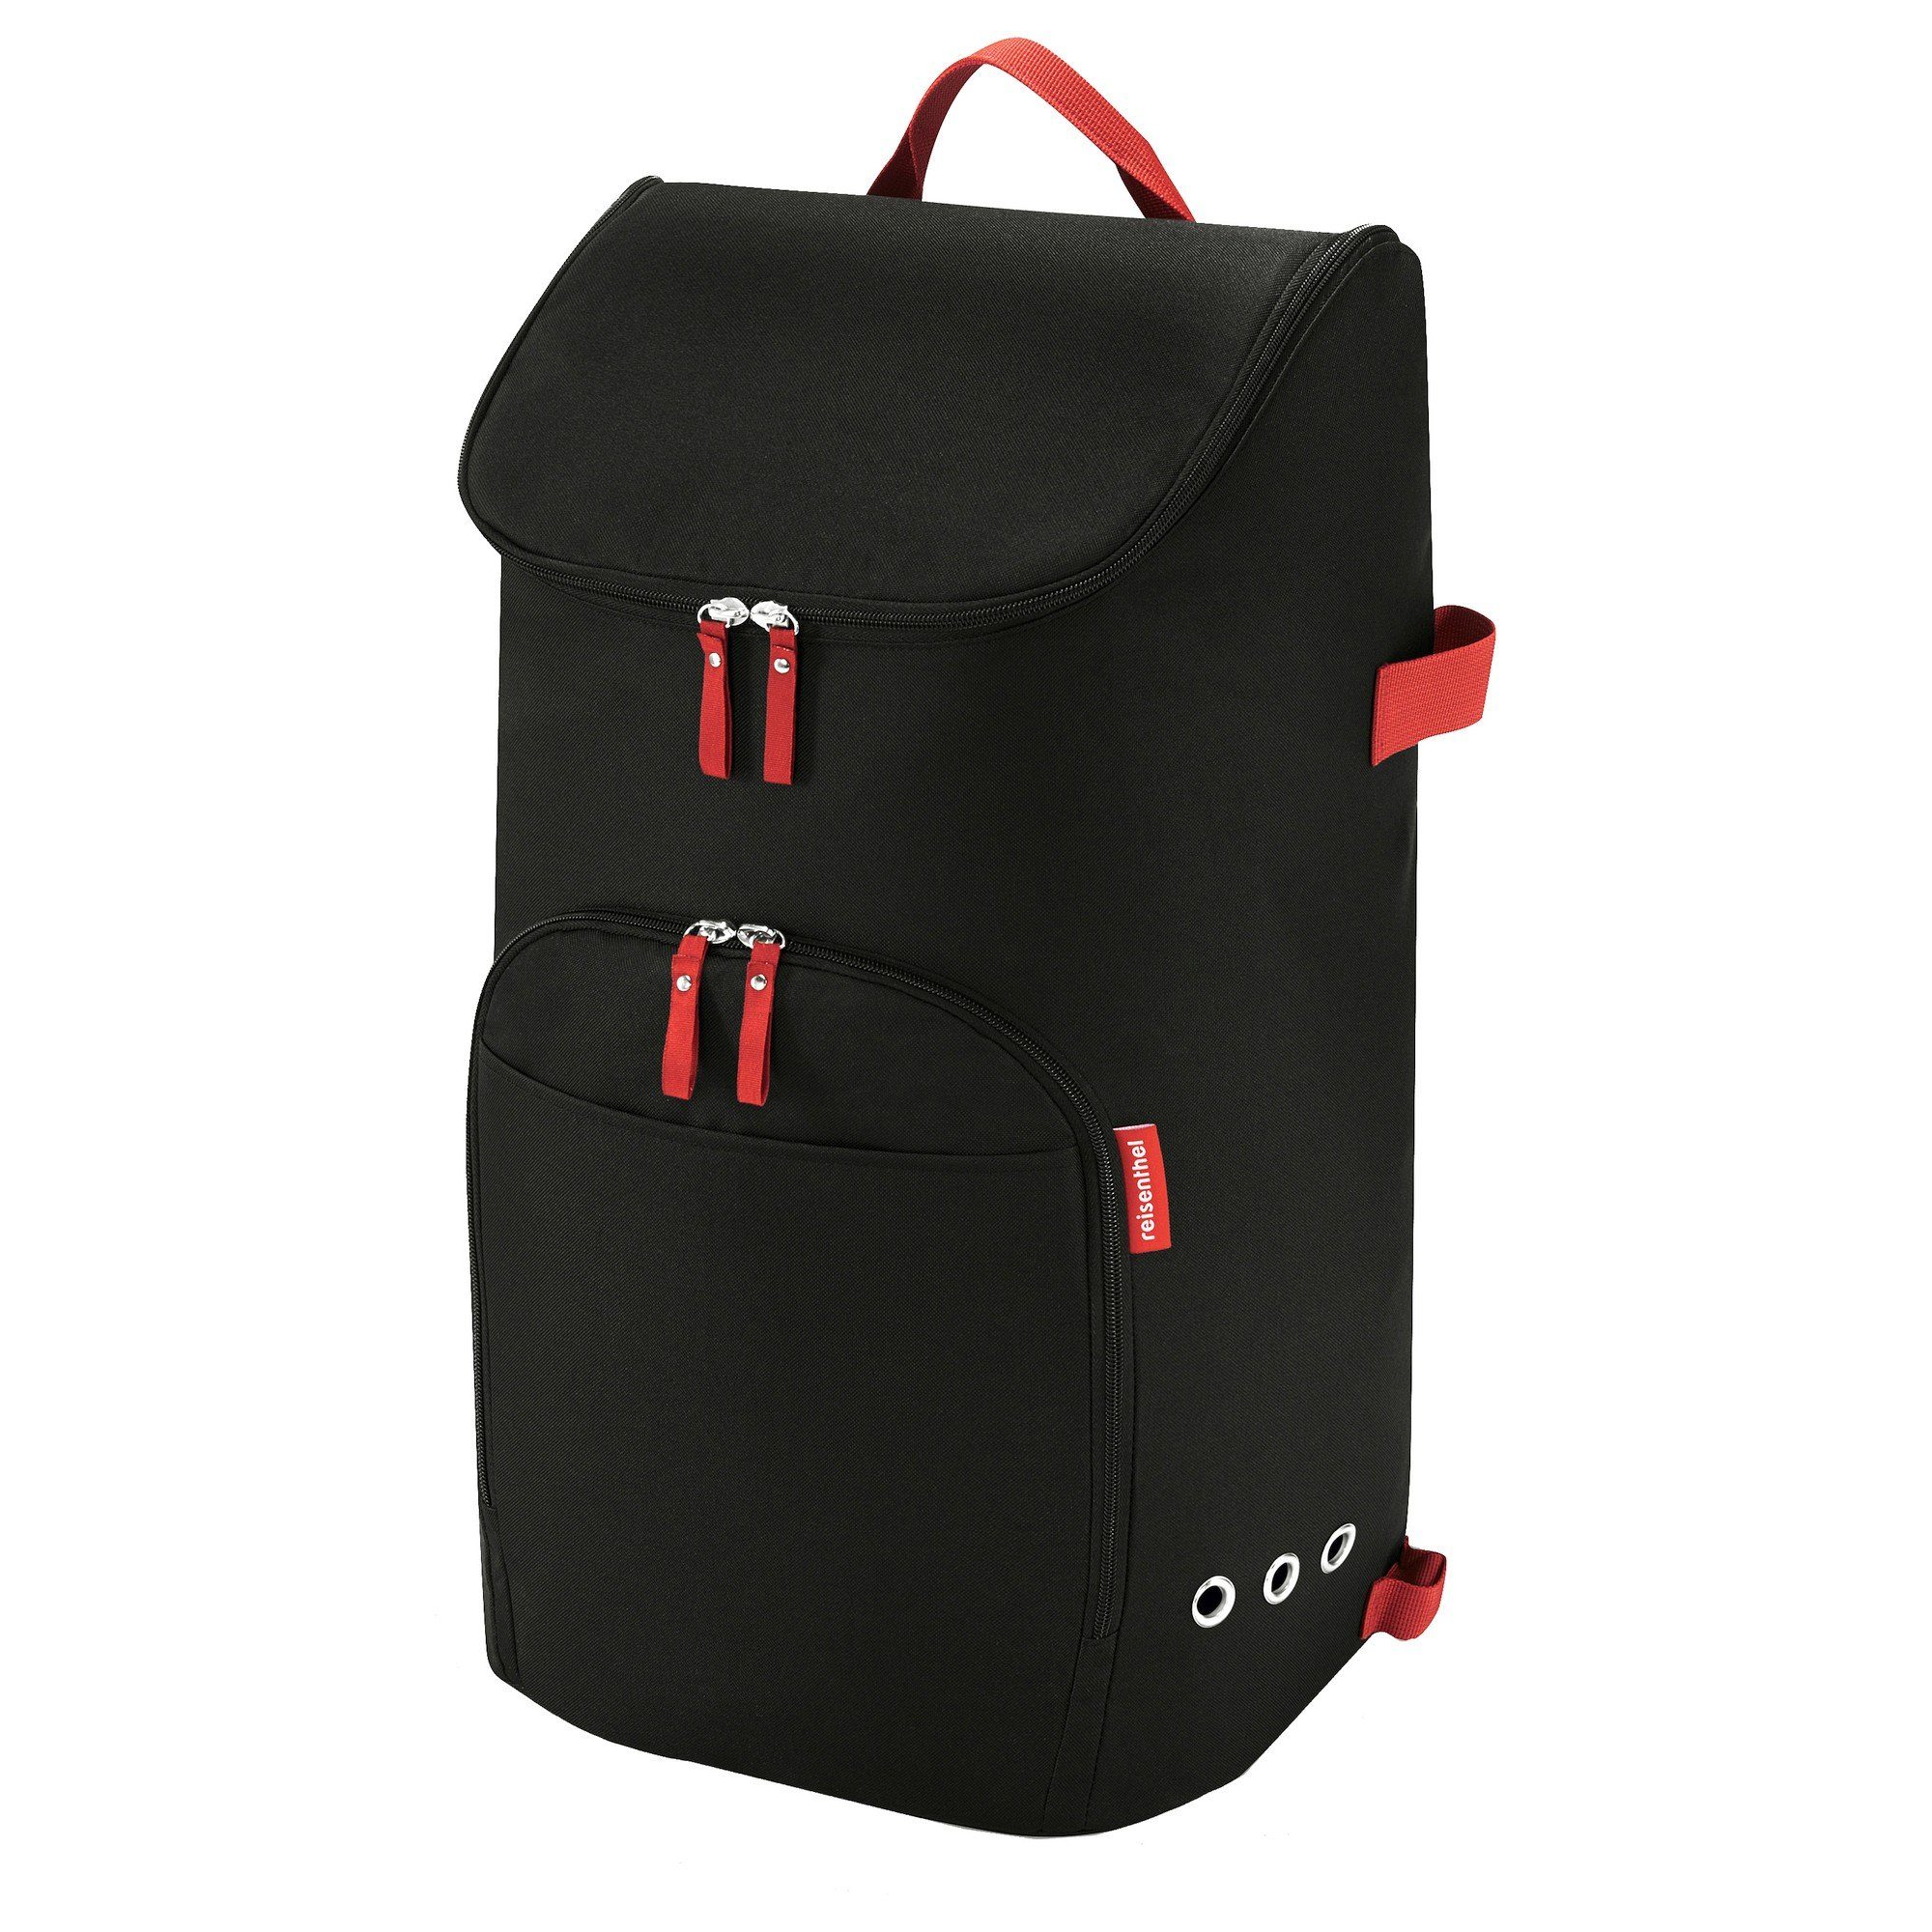 REISENTHEL® Einkaufsbeutel citycruiser bag - Einkaufstasche 60 cm, 45 l black